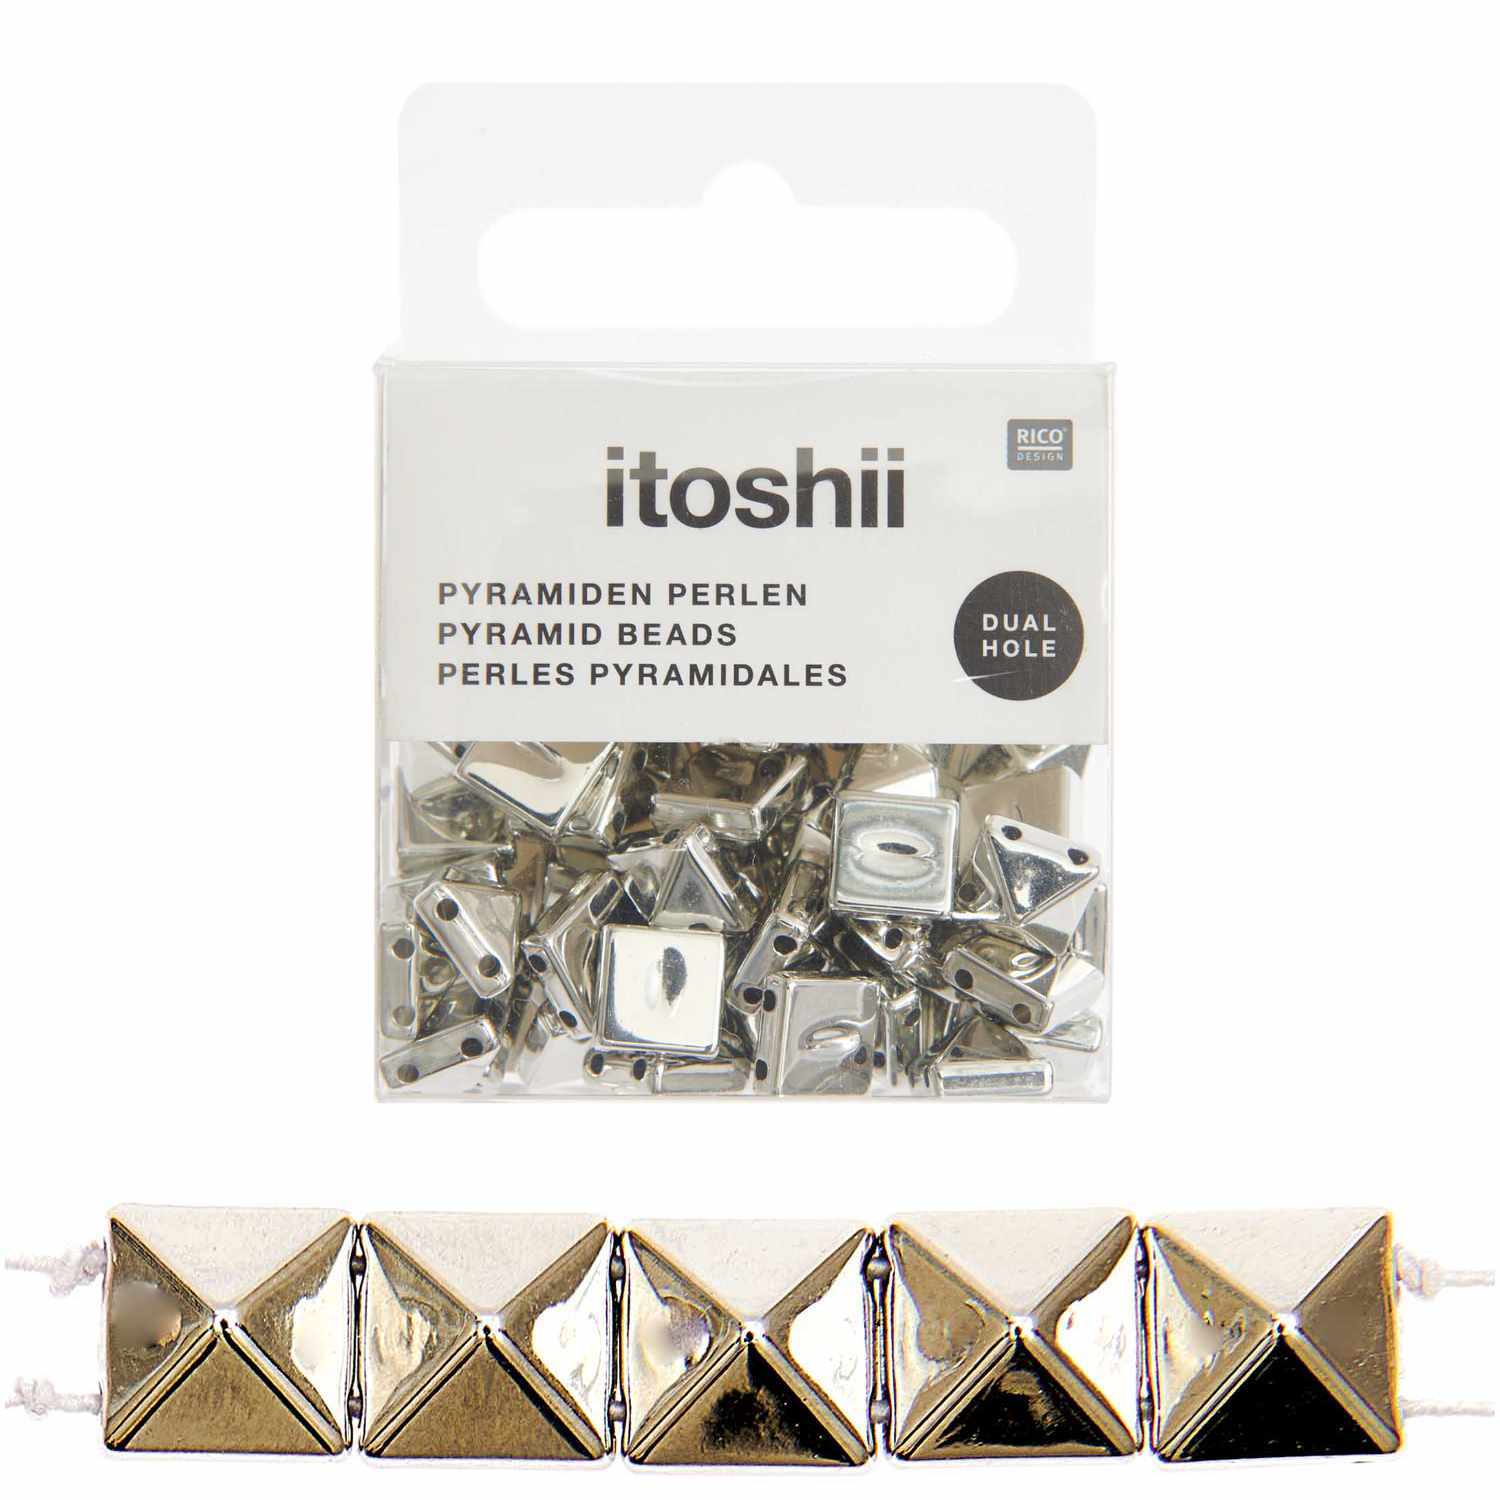 itoshii Pyramiden Perlen quadratisch silber